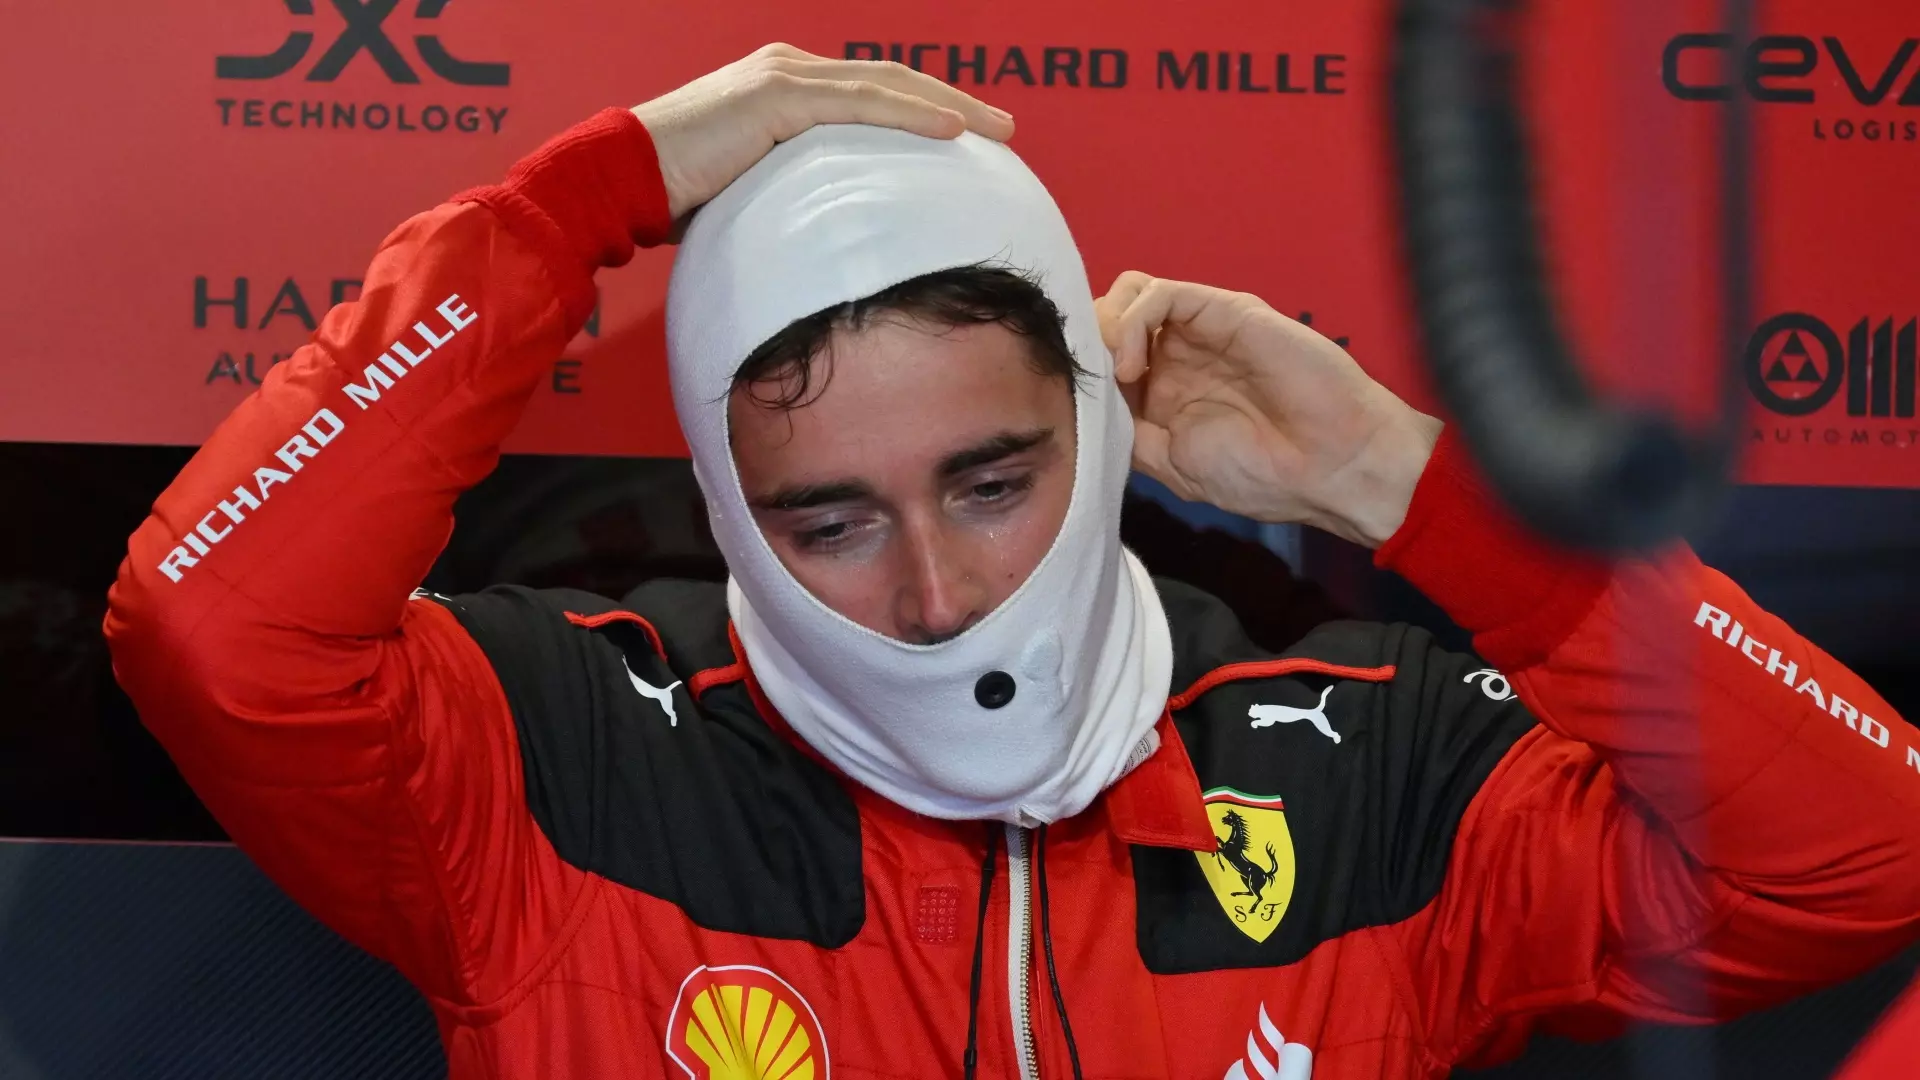 F1, non solo Charles Leclerc parte dalla pit lane